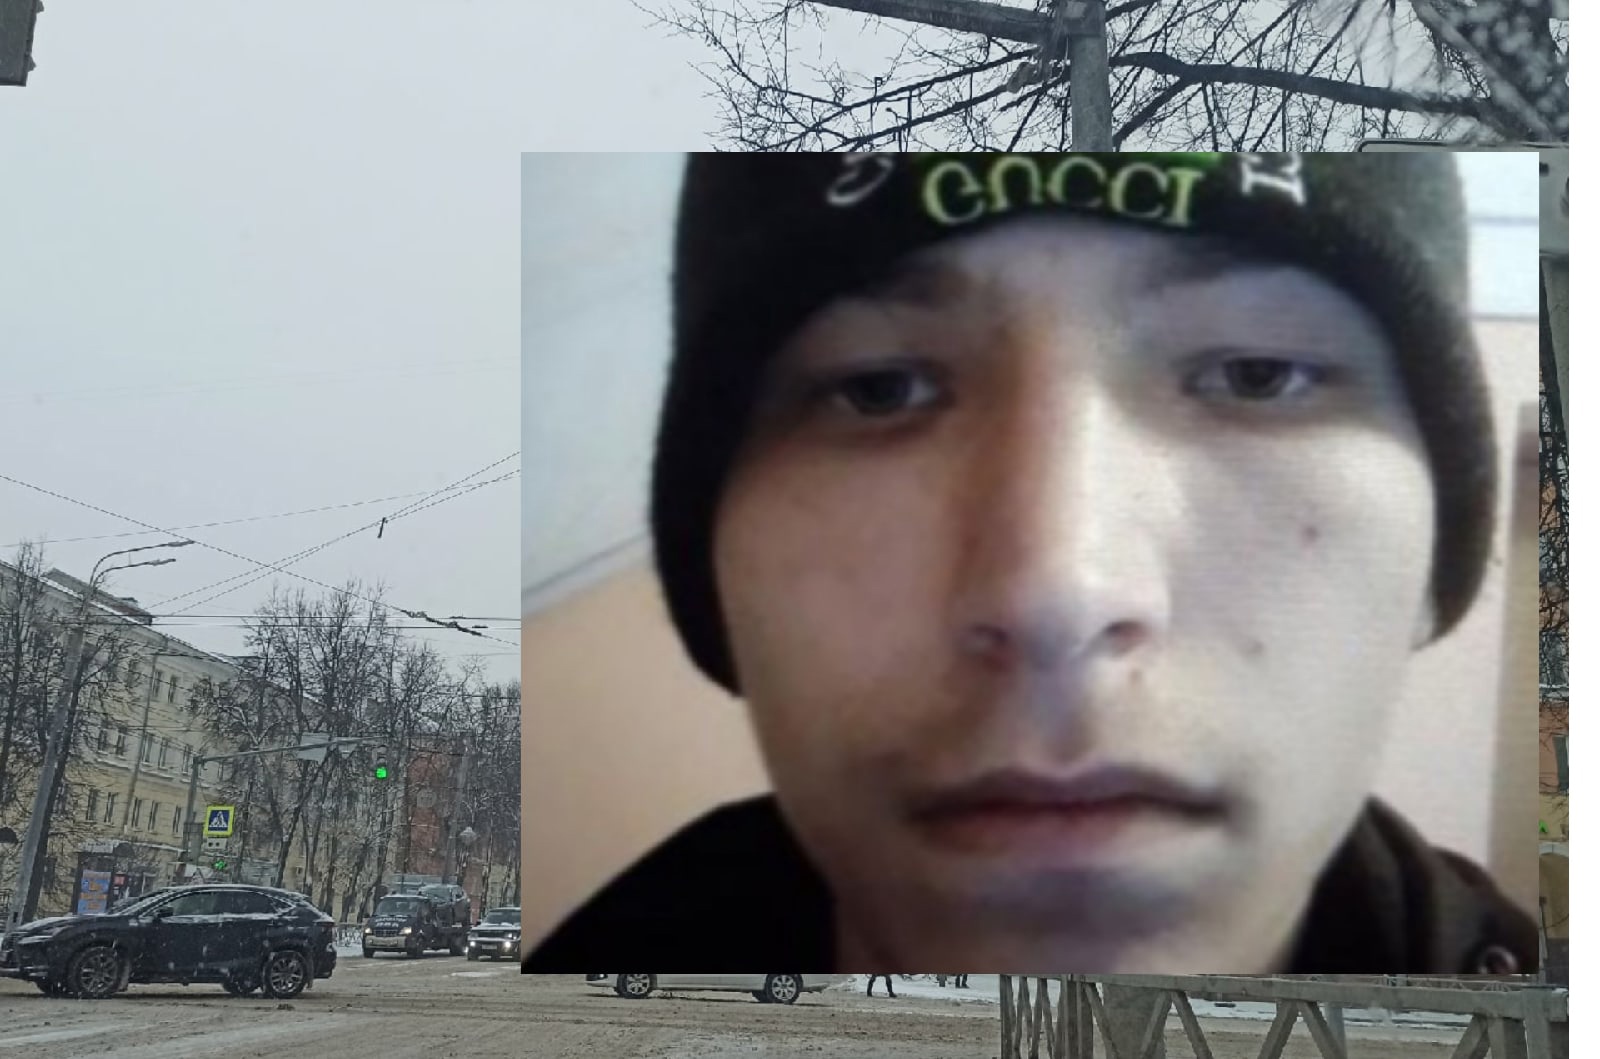  В Ярославле ищут пропавшего мальчика